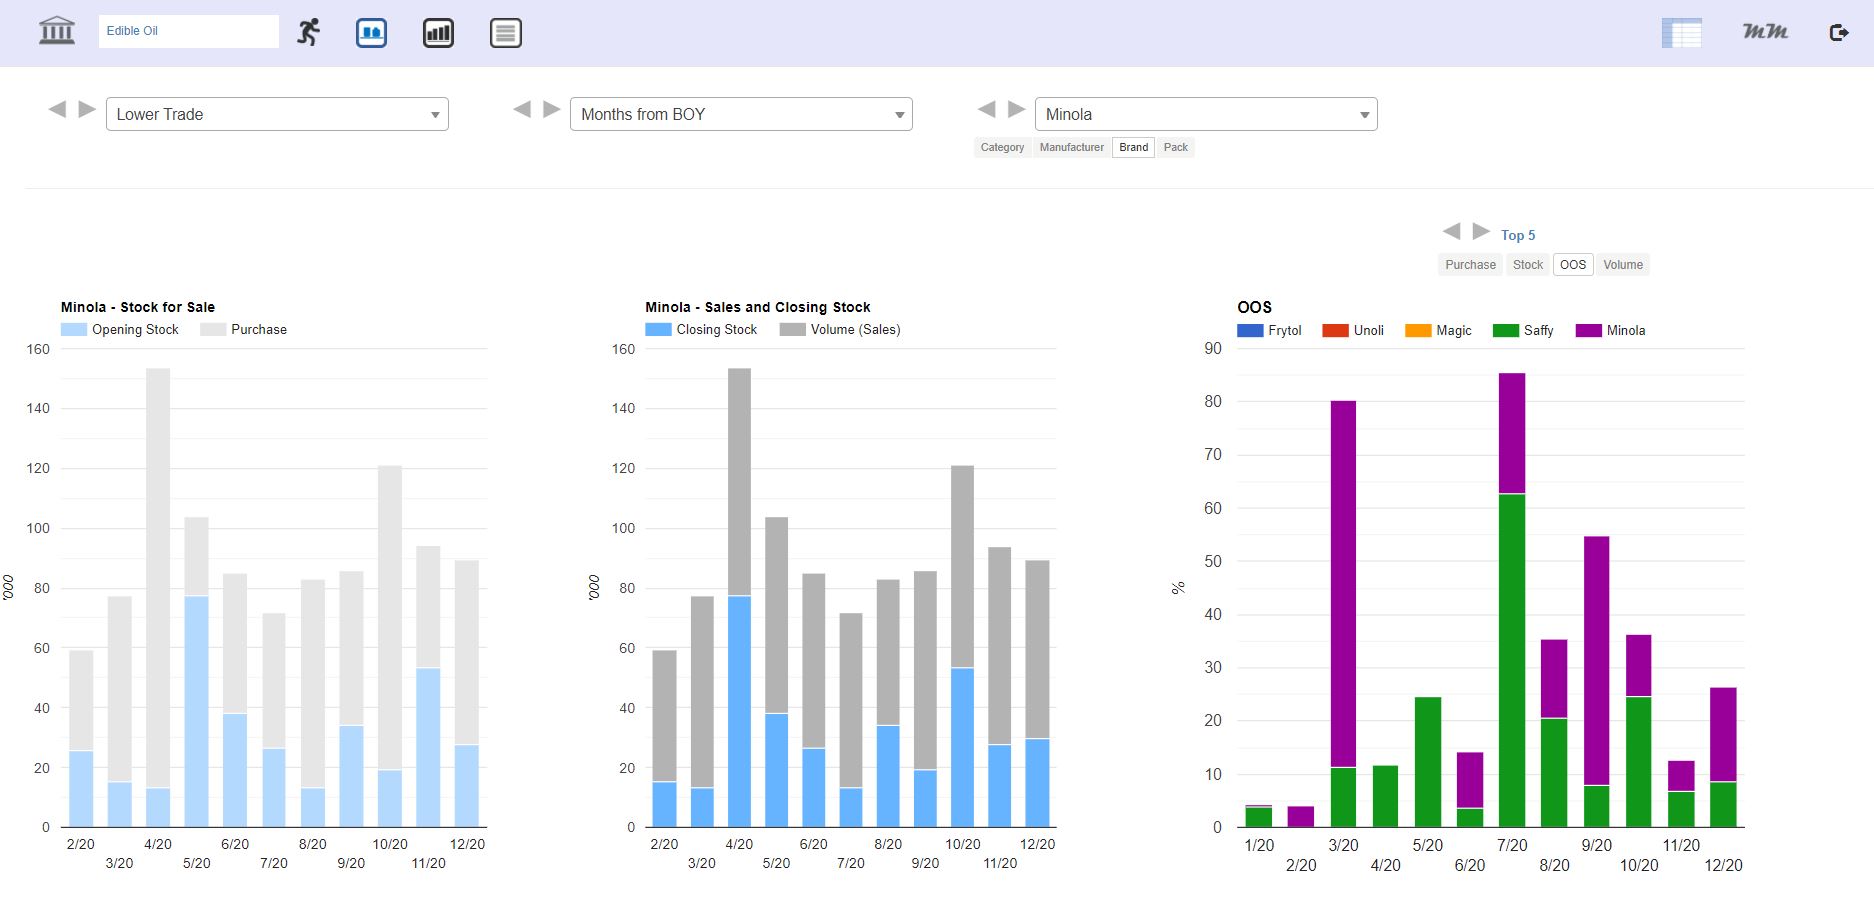 Visualization platform for Retail Measurement Services